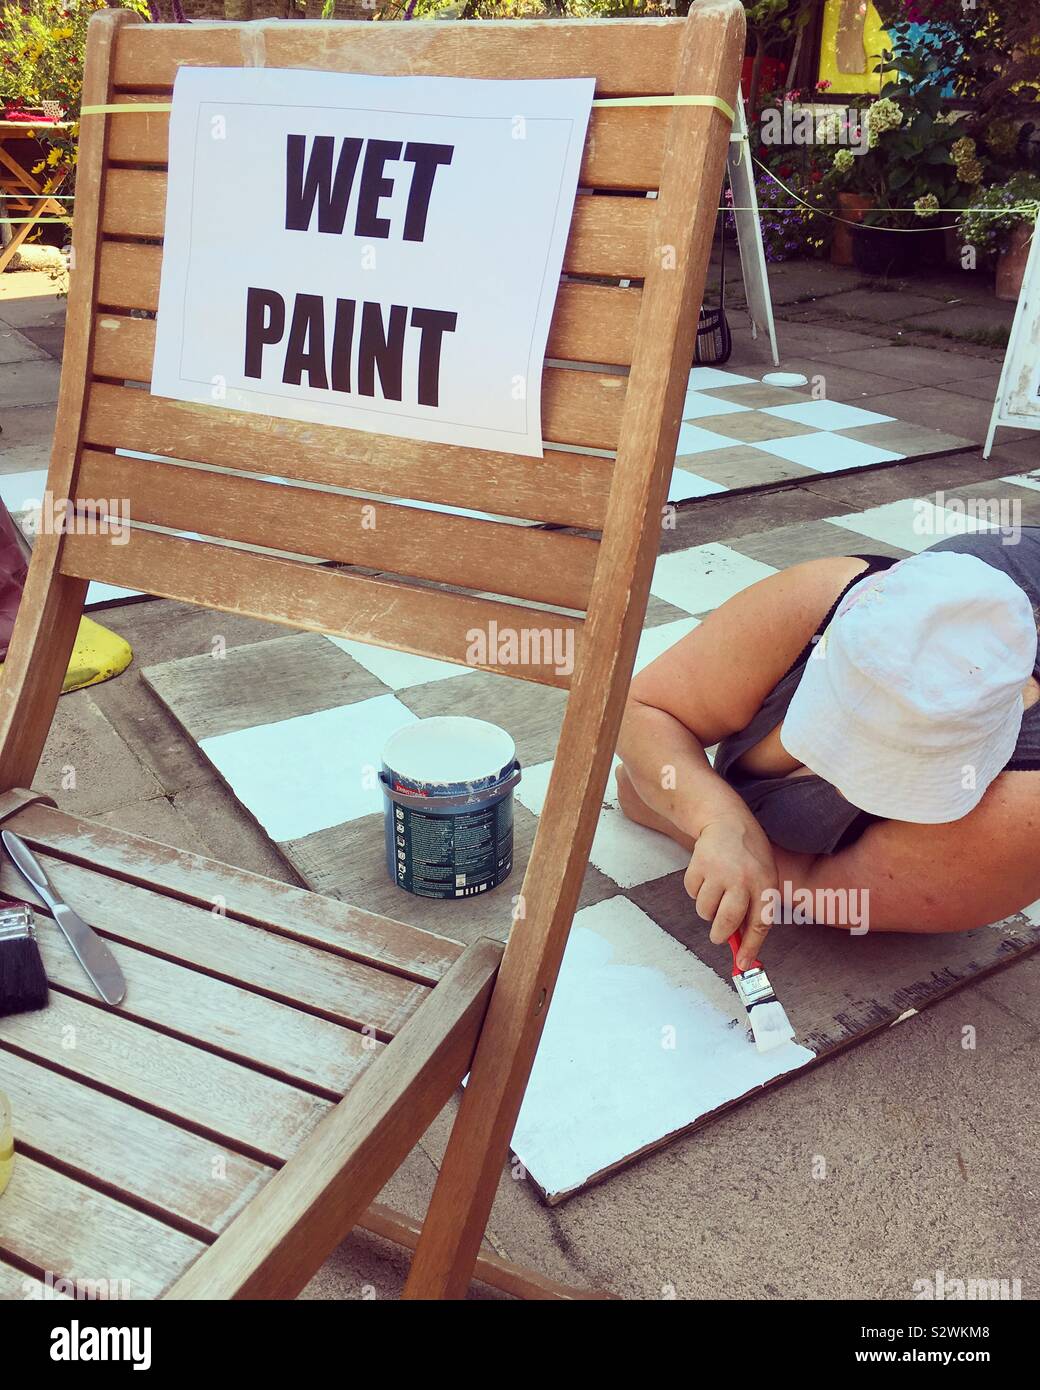 Wet segno di vernice al fianco di una donna che è dipinto un sovradimensionamento oversized in bianco e nero a scacchiera con vernice bianca sui quadratini bianchi, in strada. Twickenham, Regno Unito. Foto Stock